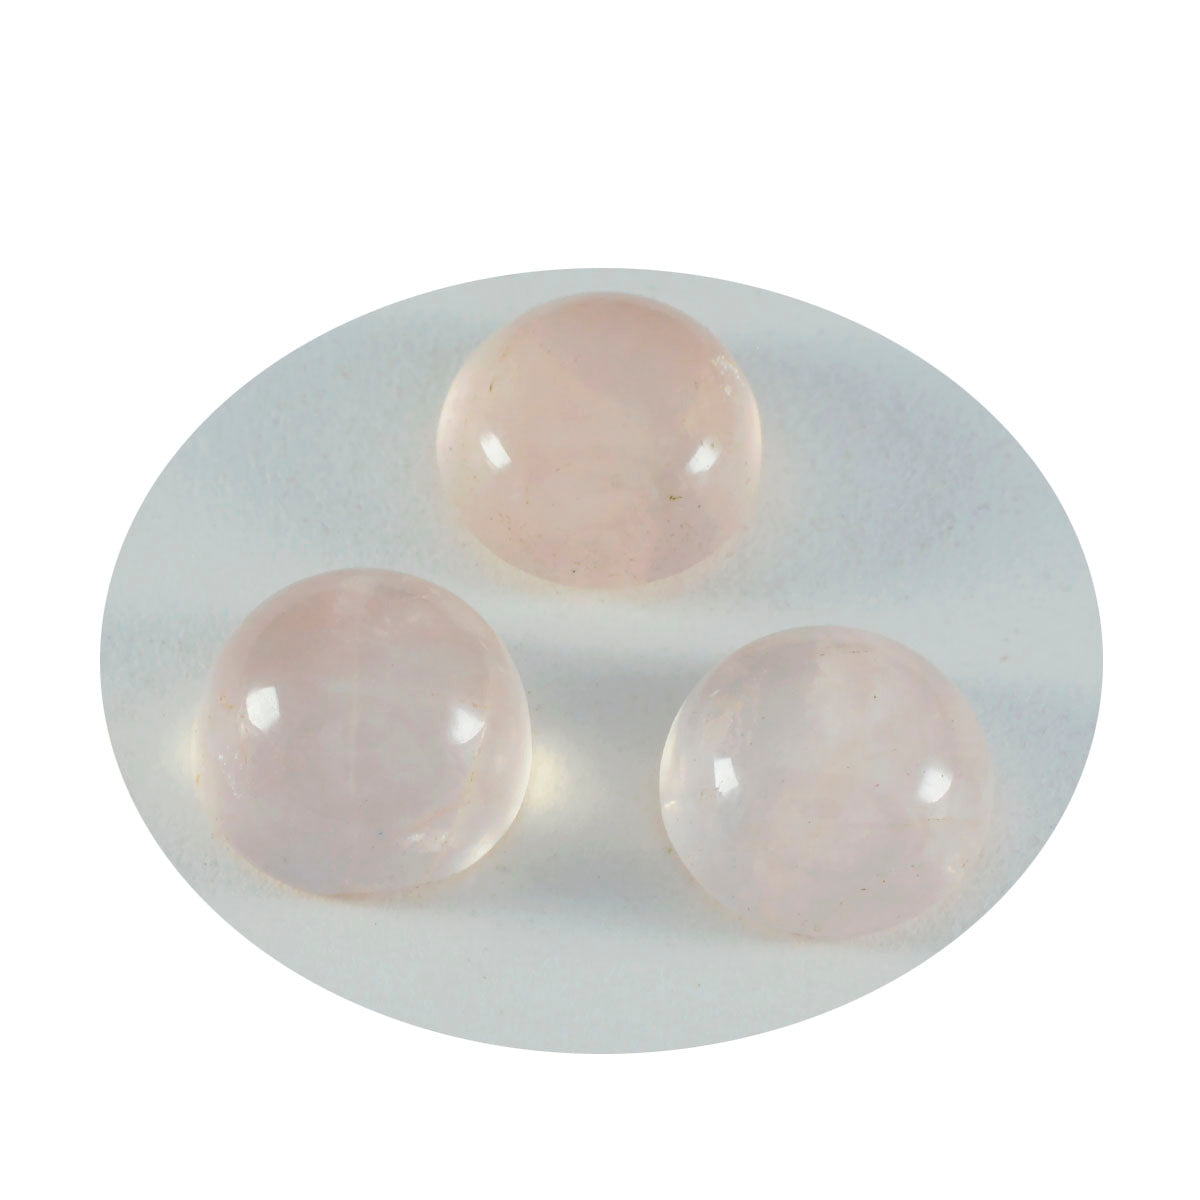 riyogems 1 шт. кабошон из розового кварца 13x13 мм круглой формы, красивый качественный свободный драгоценный камень